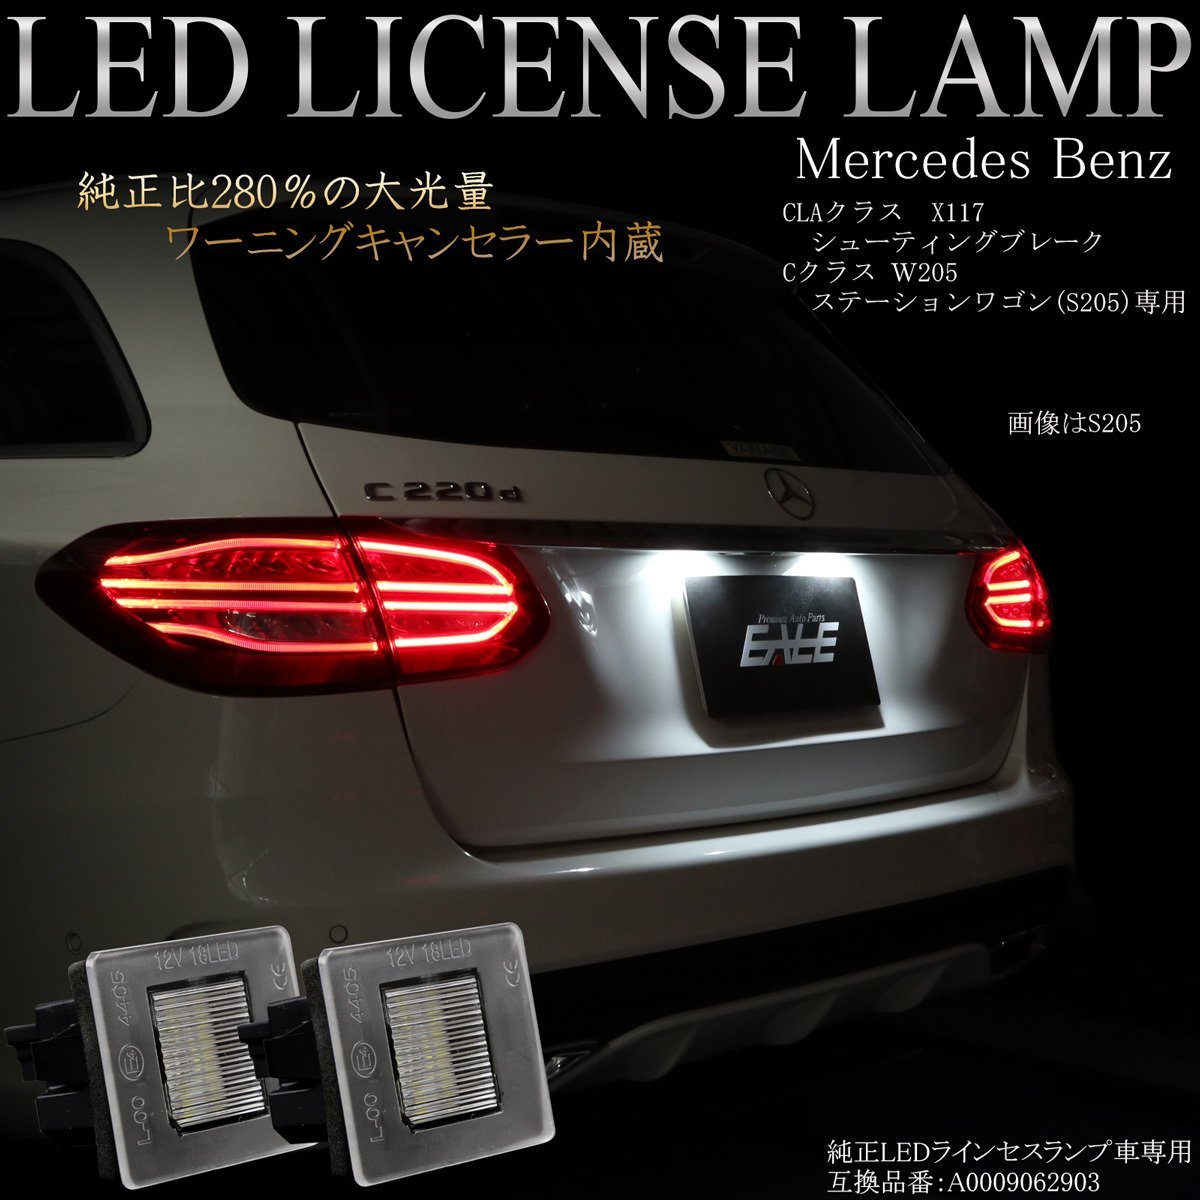  Benz LED лампа освещения C Class W205 Station Wagon специальный S205 Wagon подсветка номера единица 6500K оригинальный соотношение примерно 280% выше R-406s